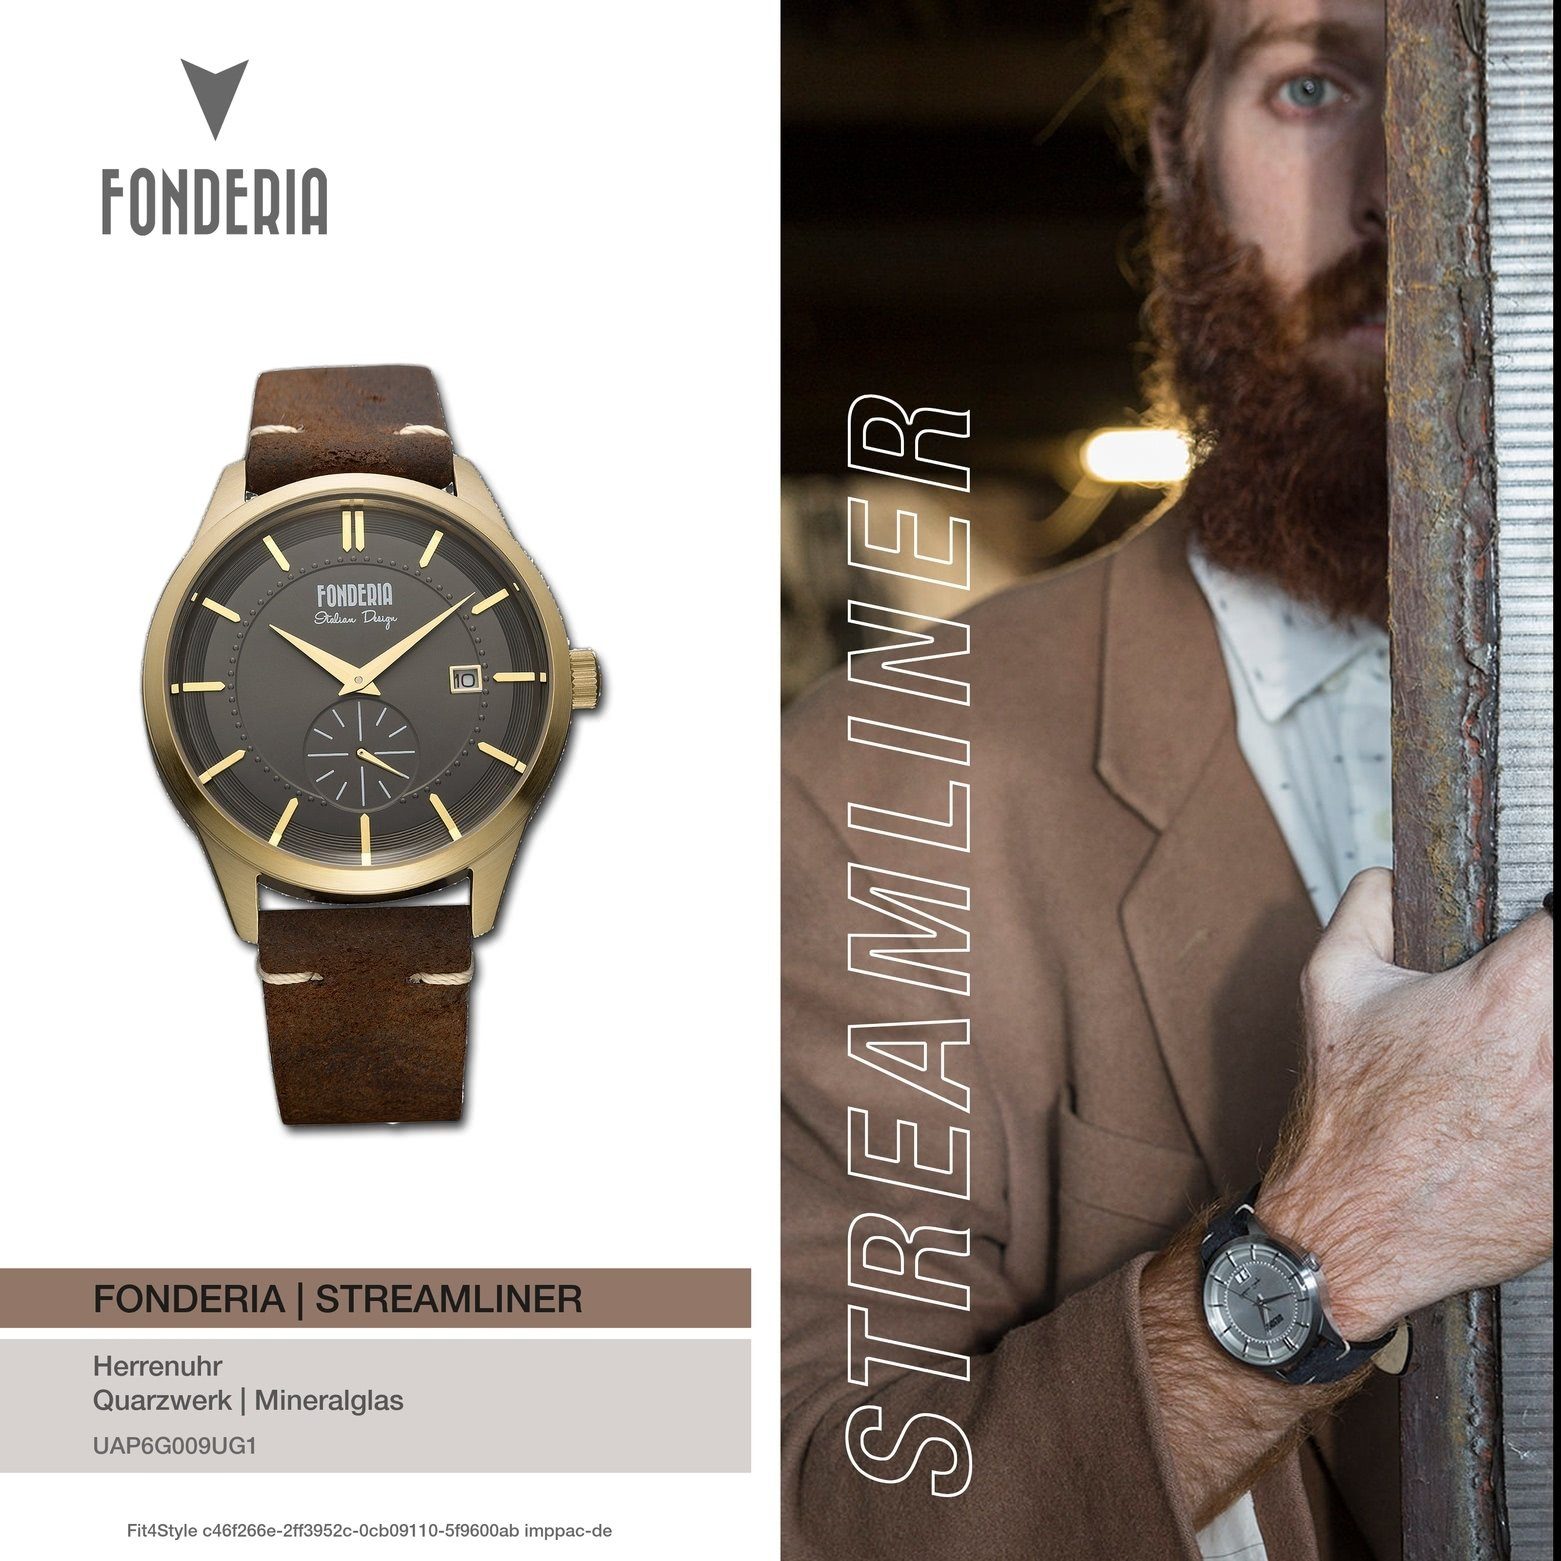 Fonderia Quarzuhr Herren Fonderia Leder, P-6G009UG1 Uhr Armbanduhr Herren Lederarmband groß (ca. rund, braun 41mm)